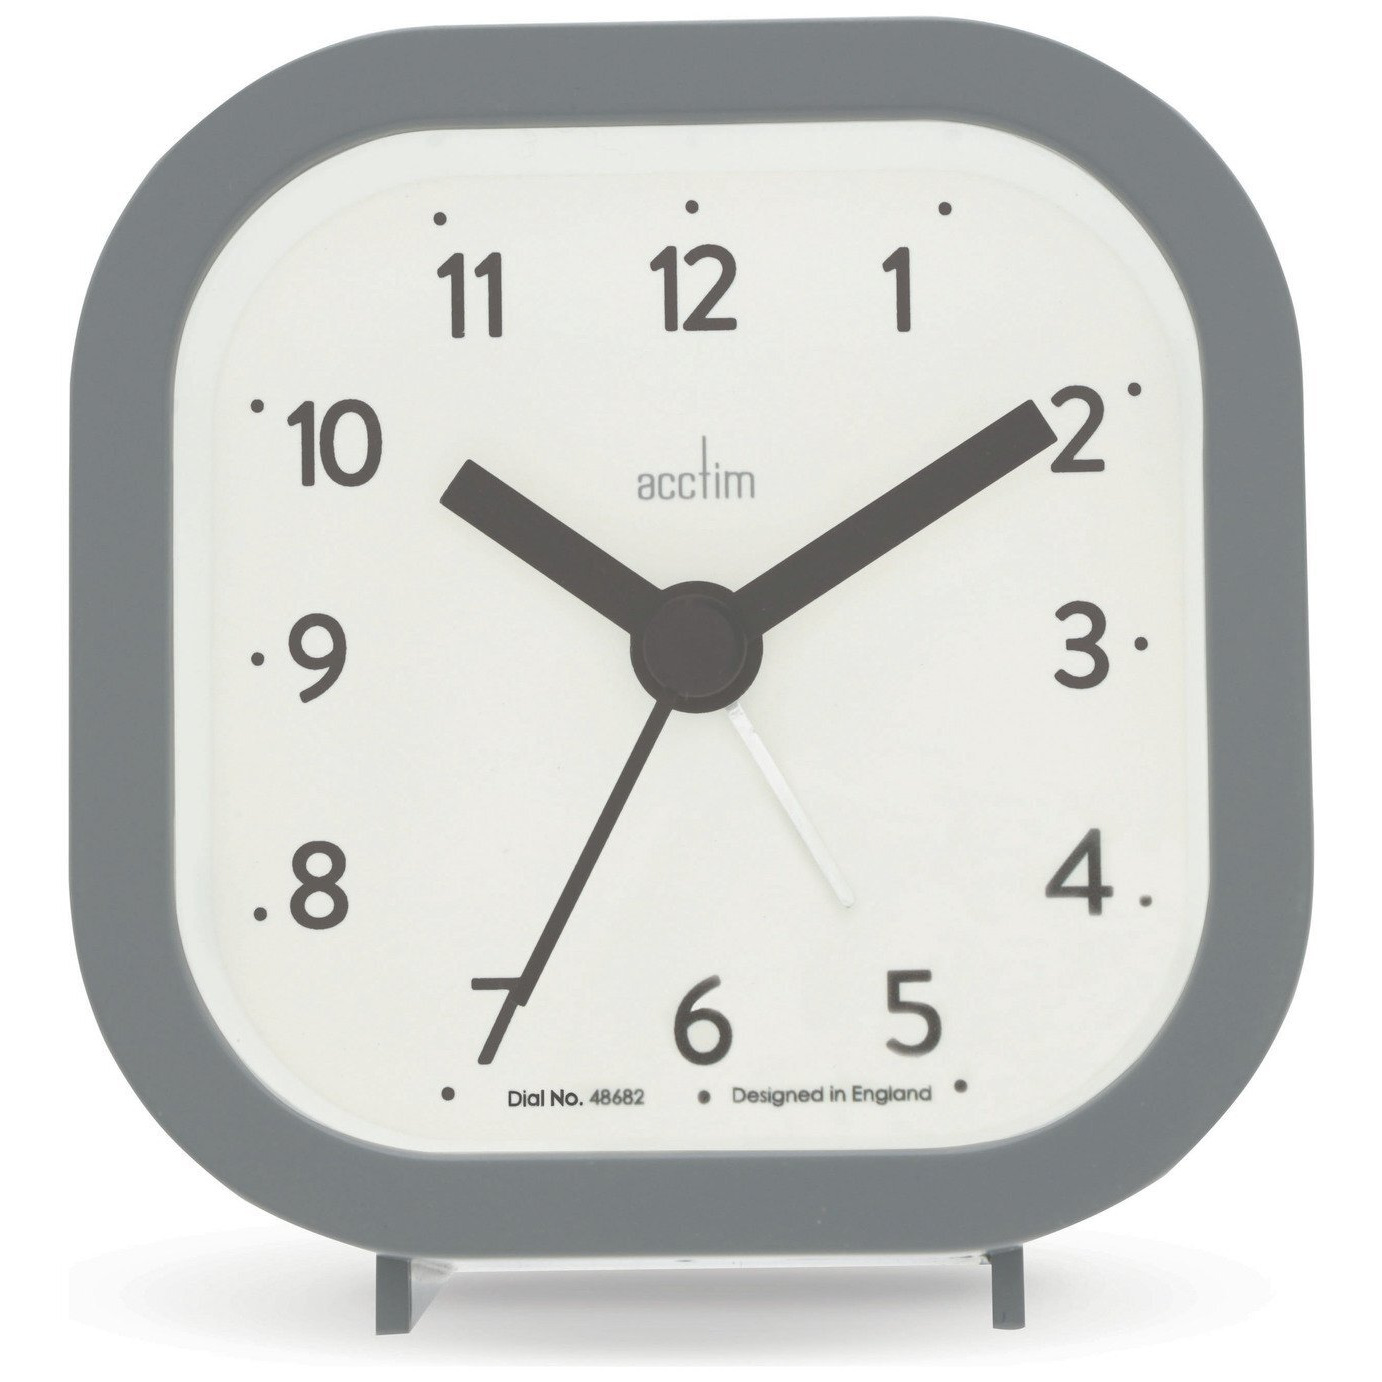 Acctim Remi Analogue Alarm Clock - Grey - image 1